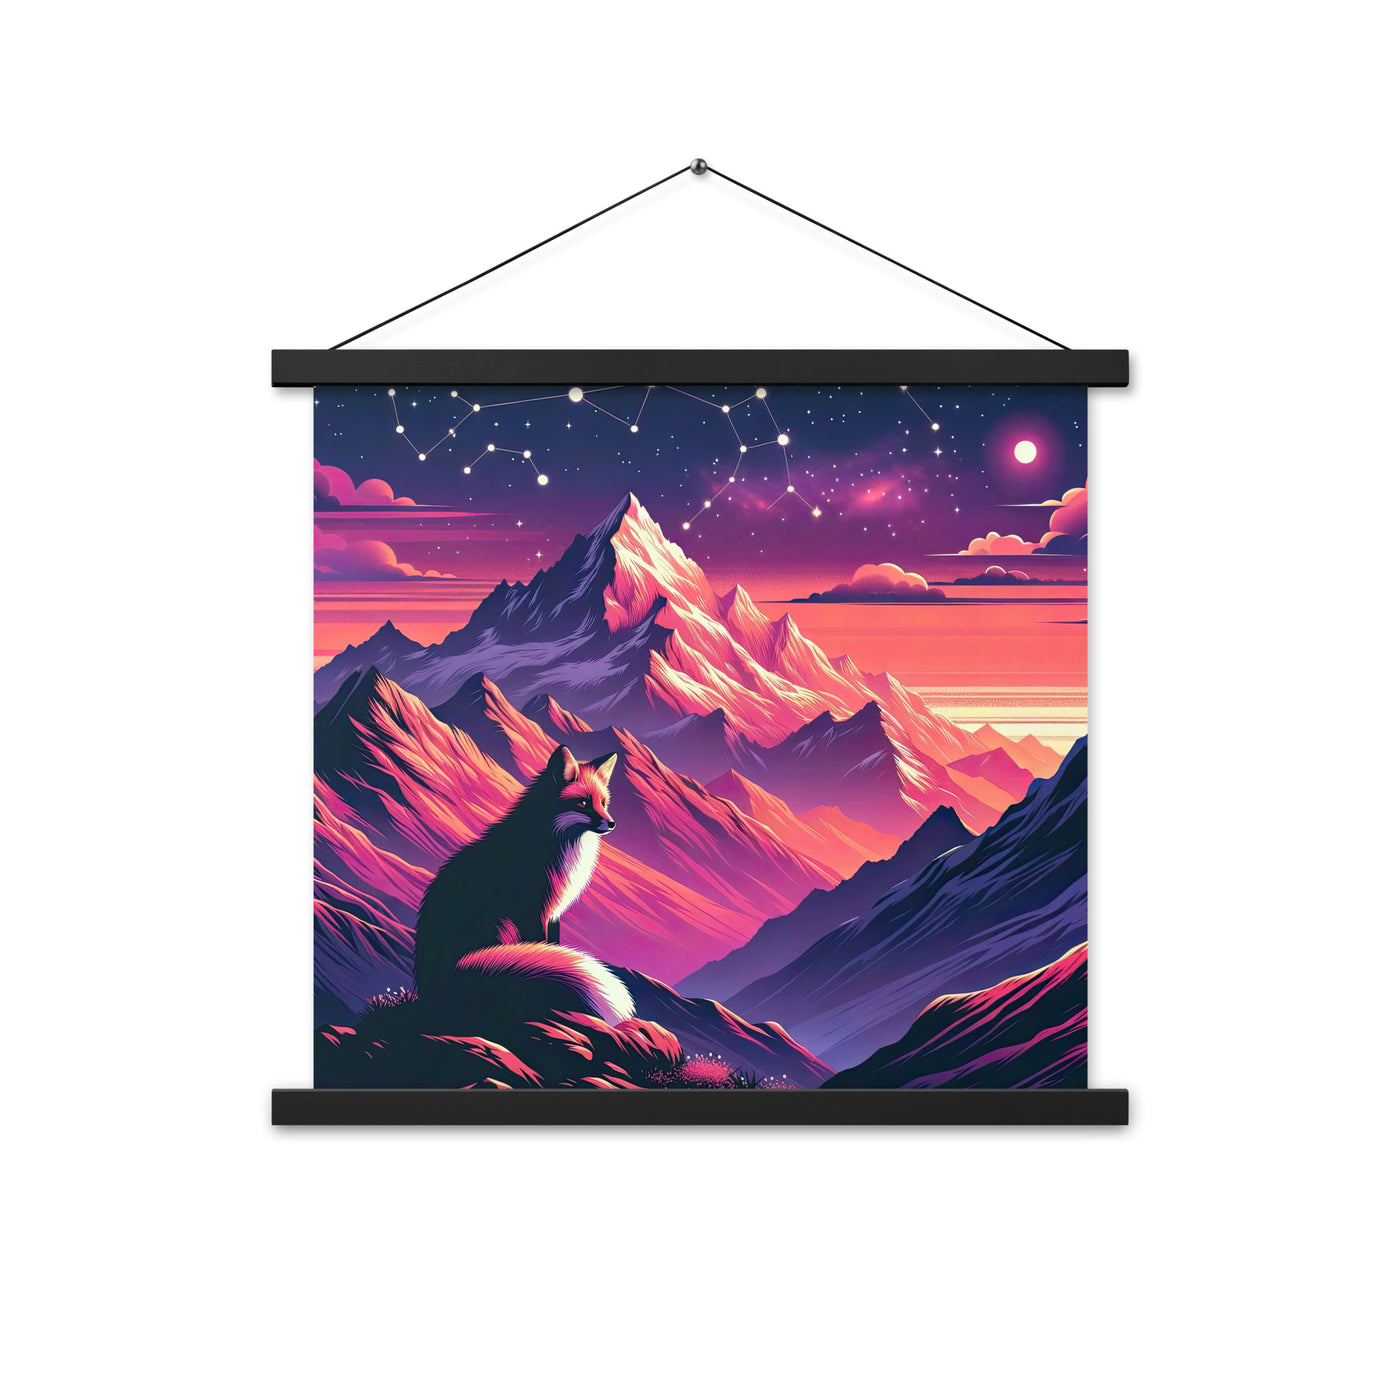 Fuchs im dramatischen Sonnenuntergang: Digitale Bergillustration in Abendfarben - Premium Poster mit Aufhängung camping xxx yyy zzz 45.7 x 45.7 cm